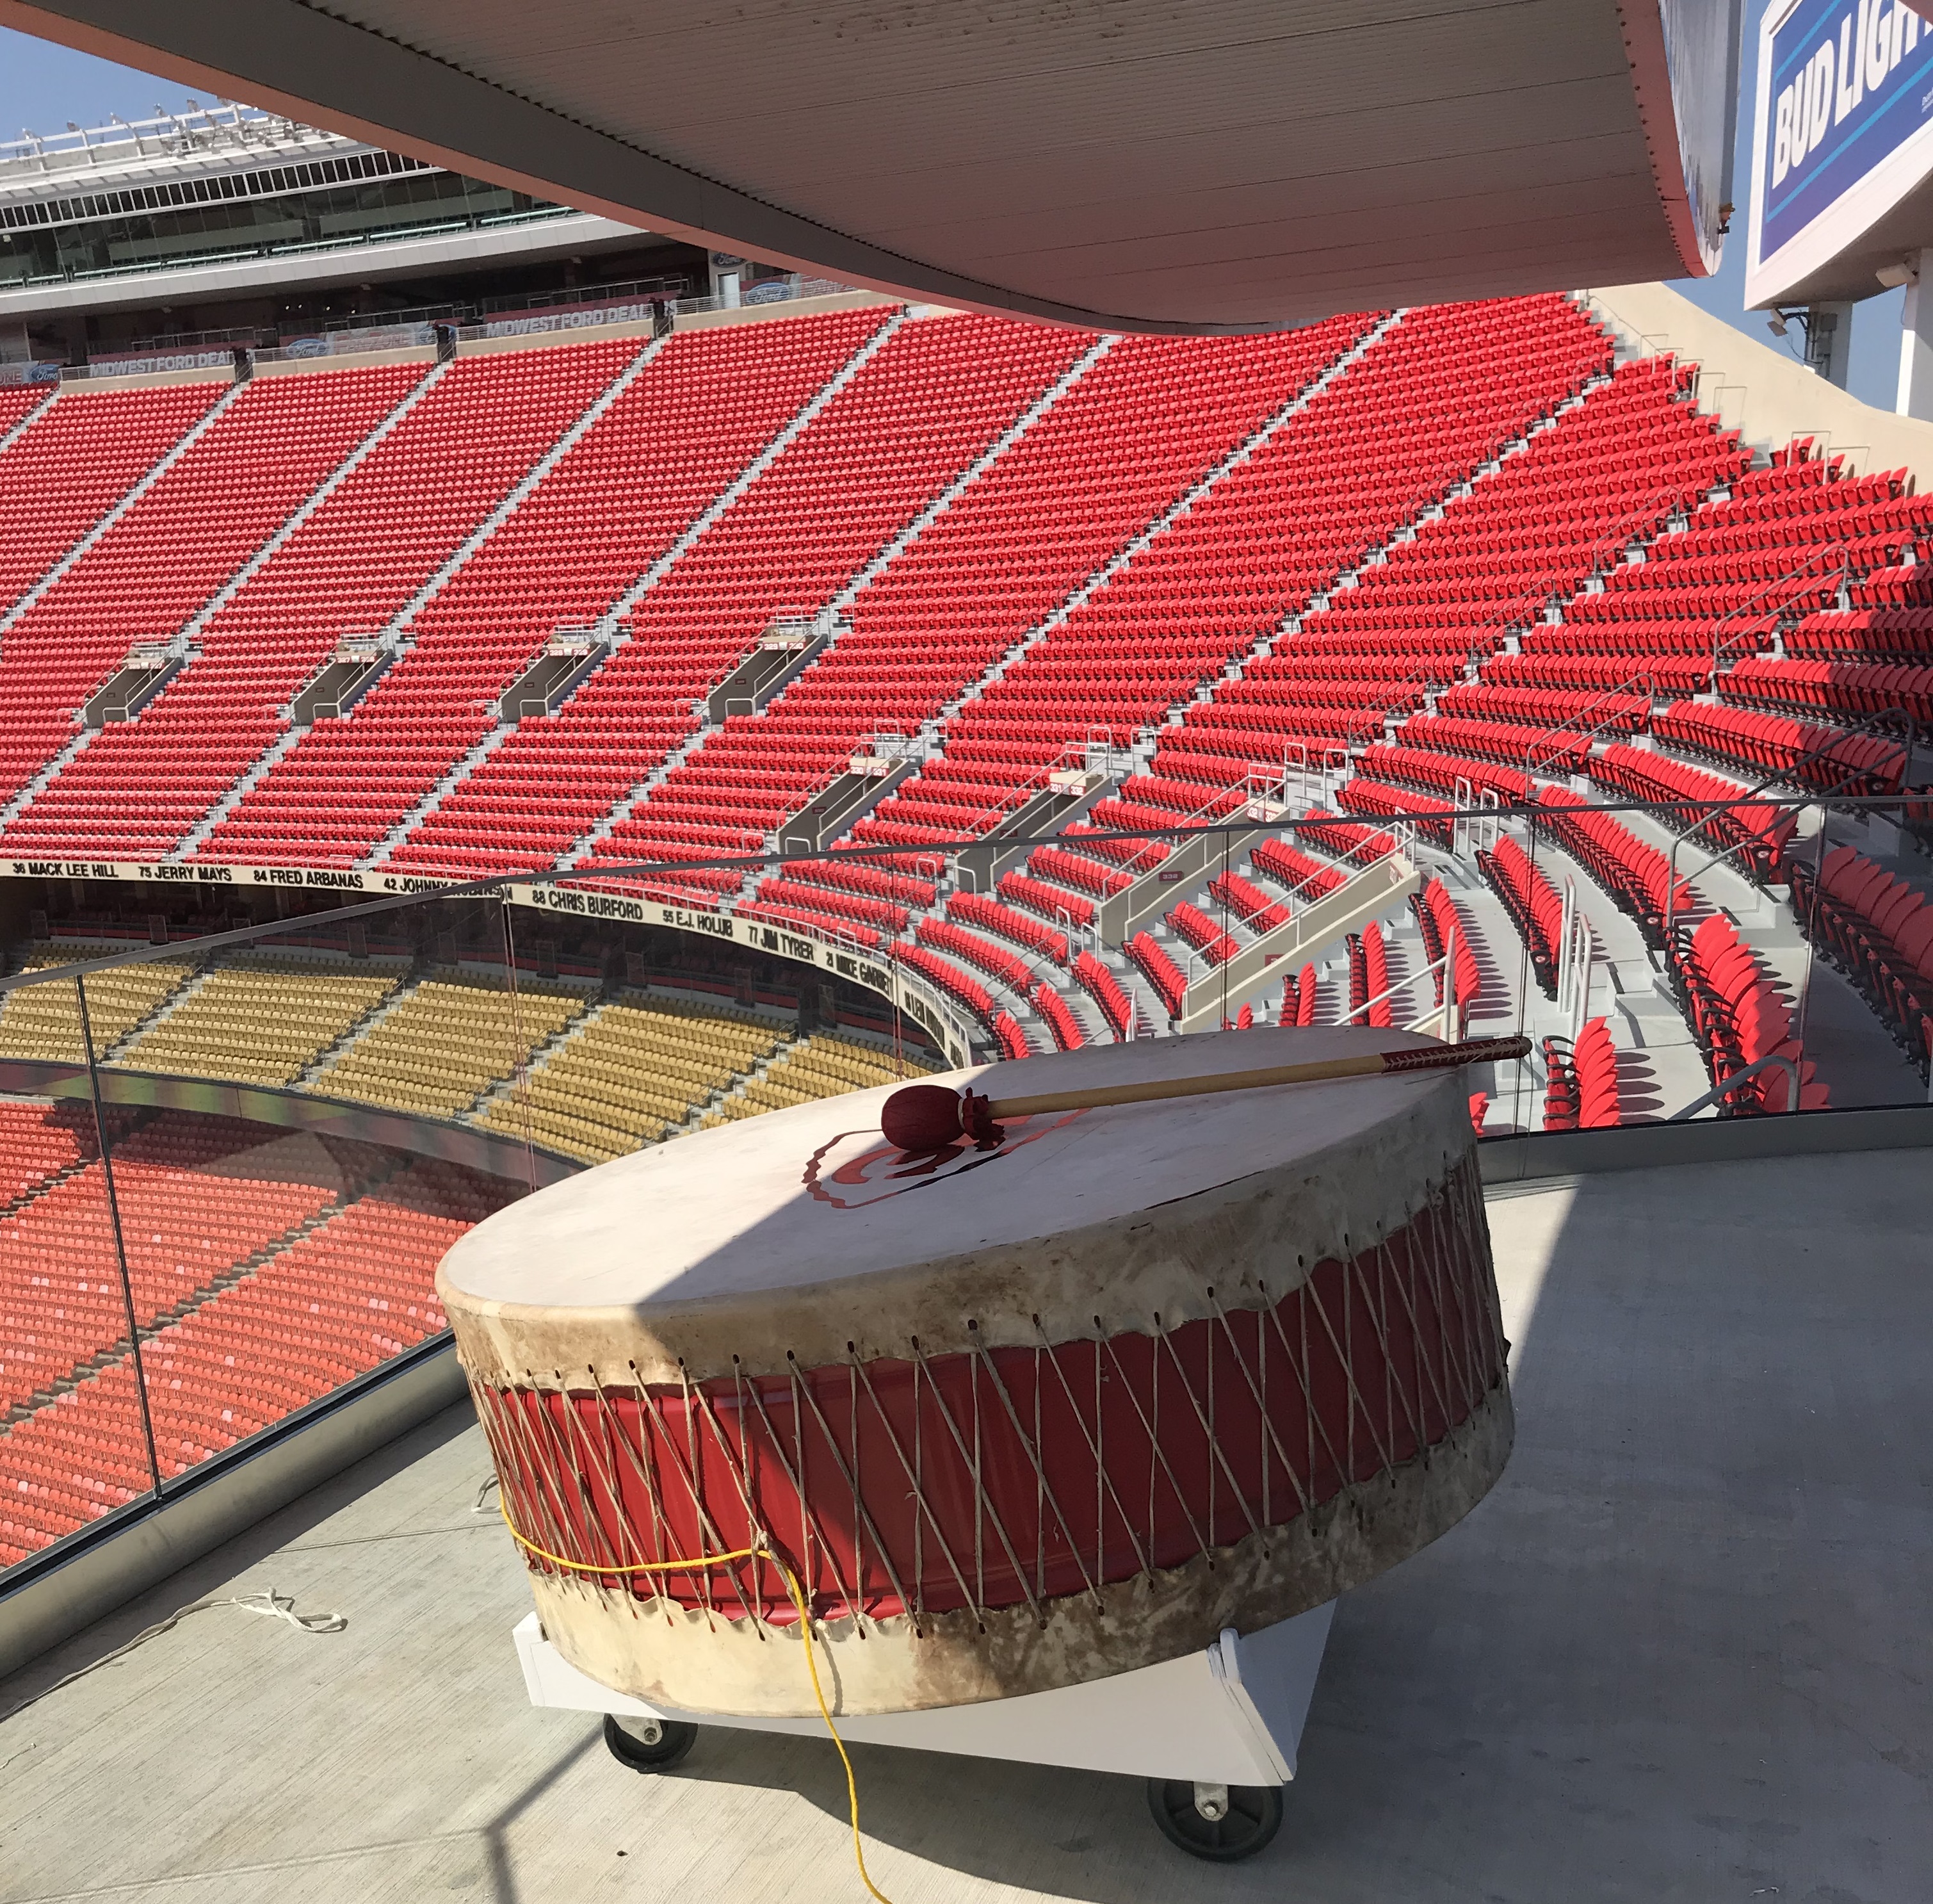 Drum in stadium